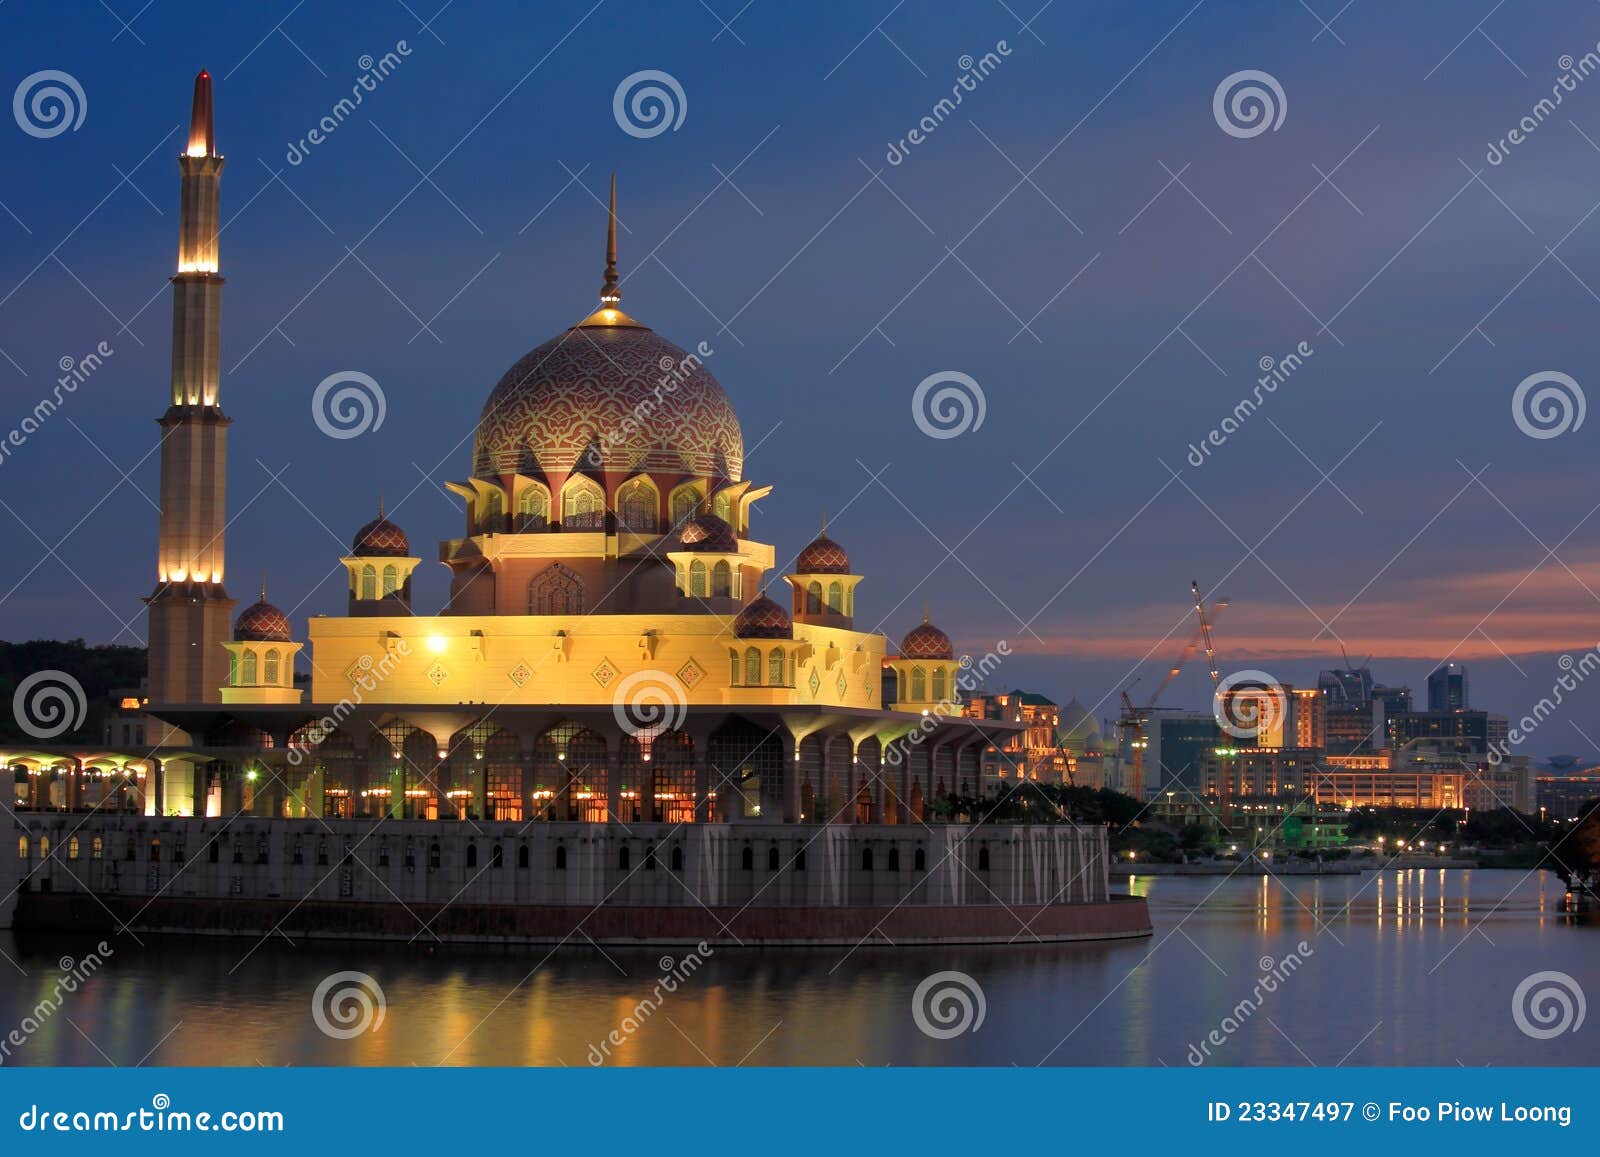 De mening van de nacht van Putrajaya Moskee Maleisië. De mening van de nacht van Moskee Putrajaya in Maleisië